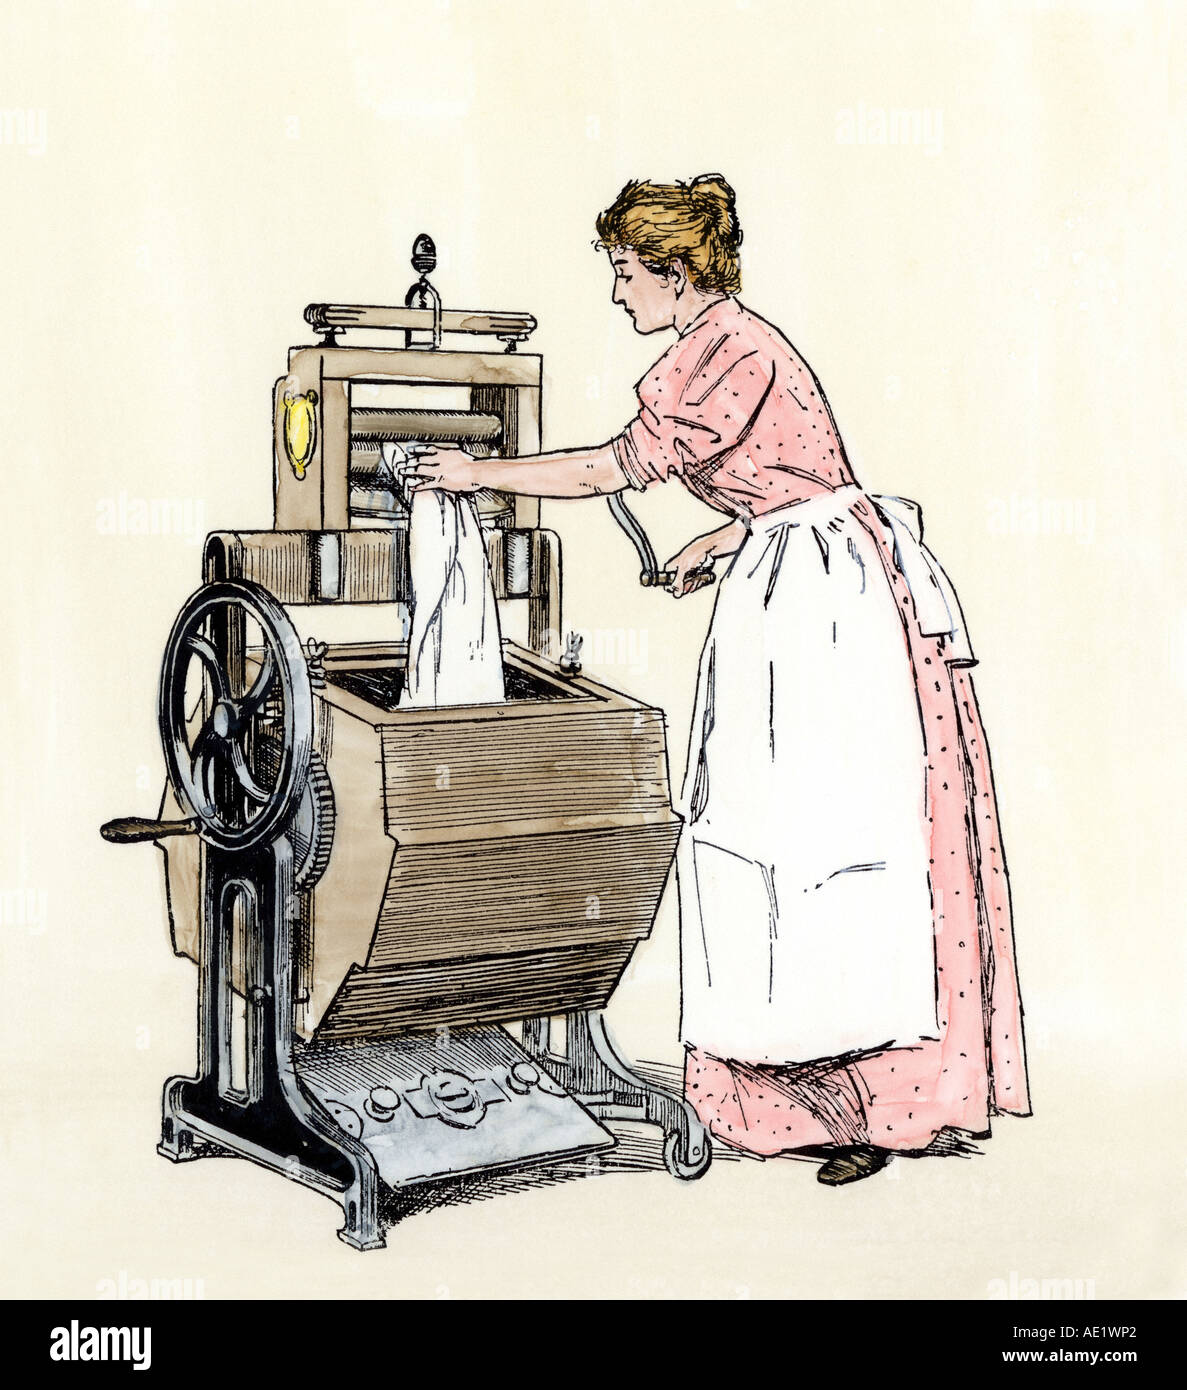 Femme à l'aide de la nouvelle voyelle Bradford lave-linge avec un gland essoreuse vers 1900. À la main, gravure sur bois Banque D'Images